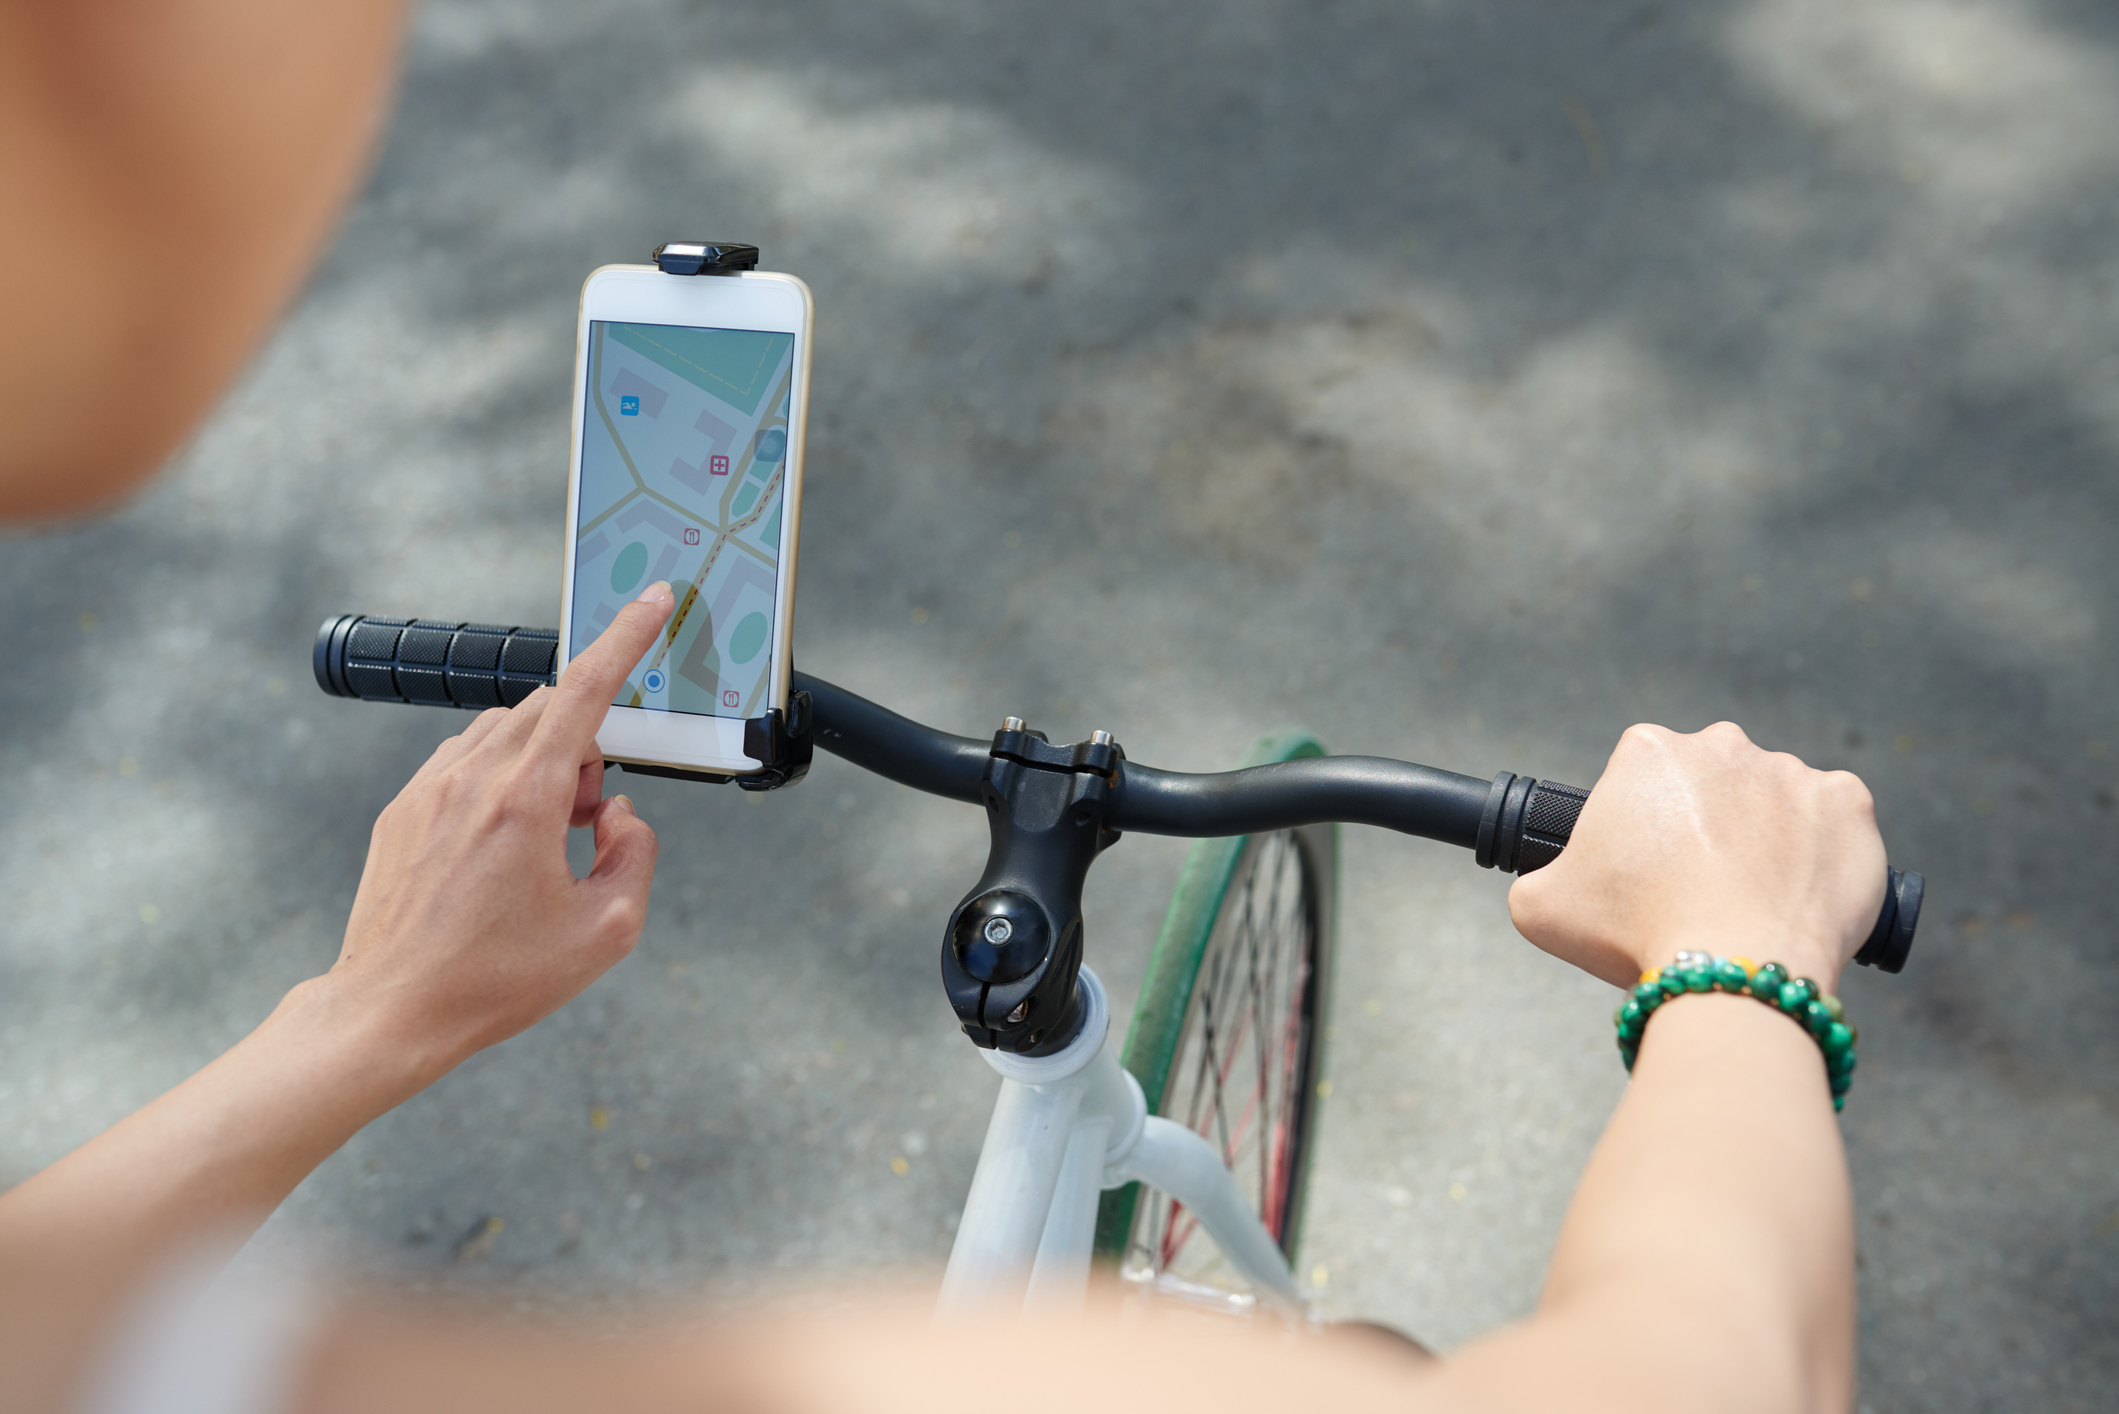 Fahrrad-Handyhalterung: So kommt das Smartphone sicher mit!